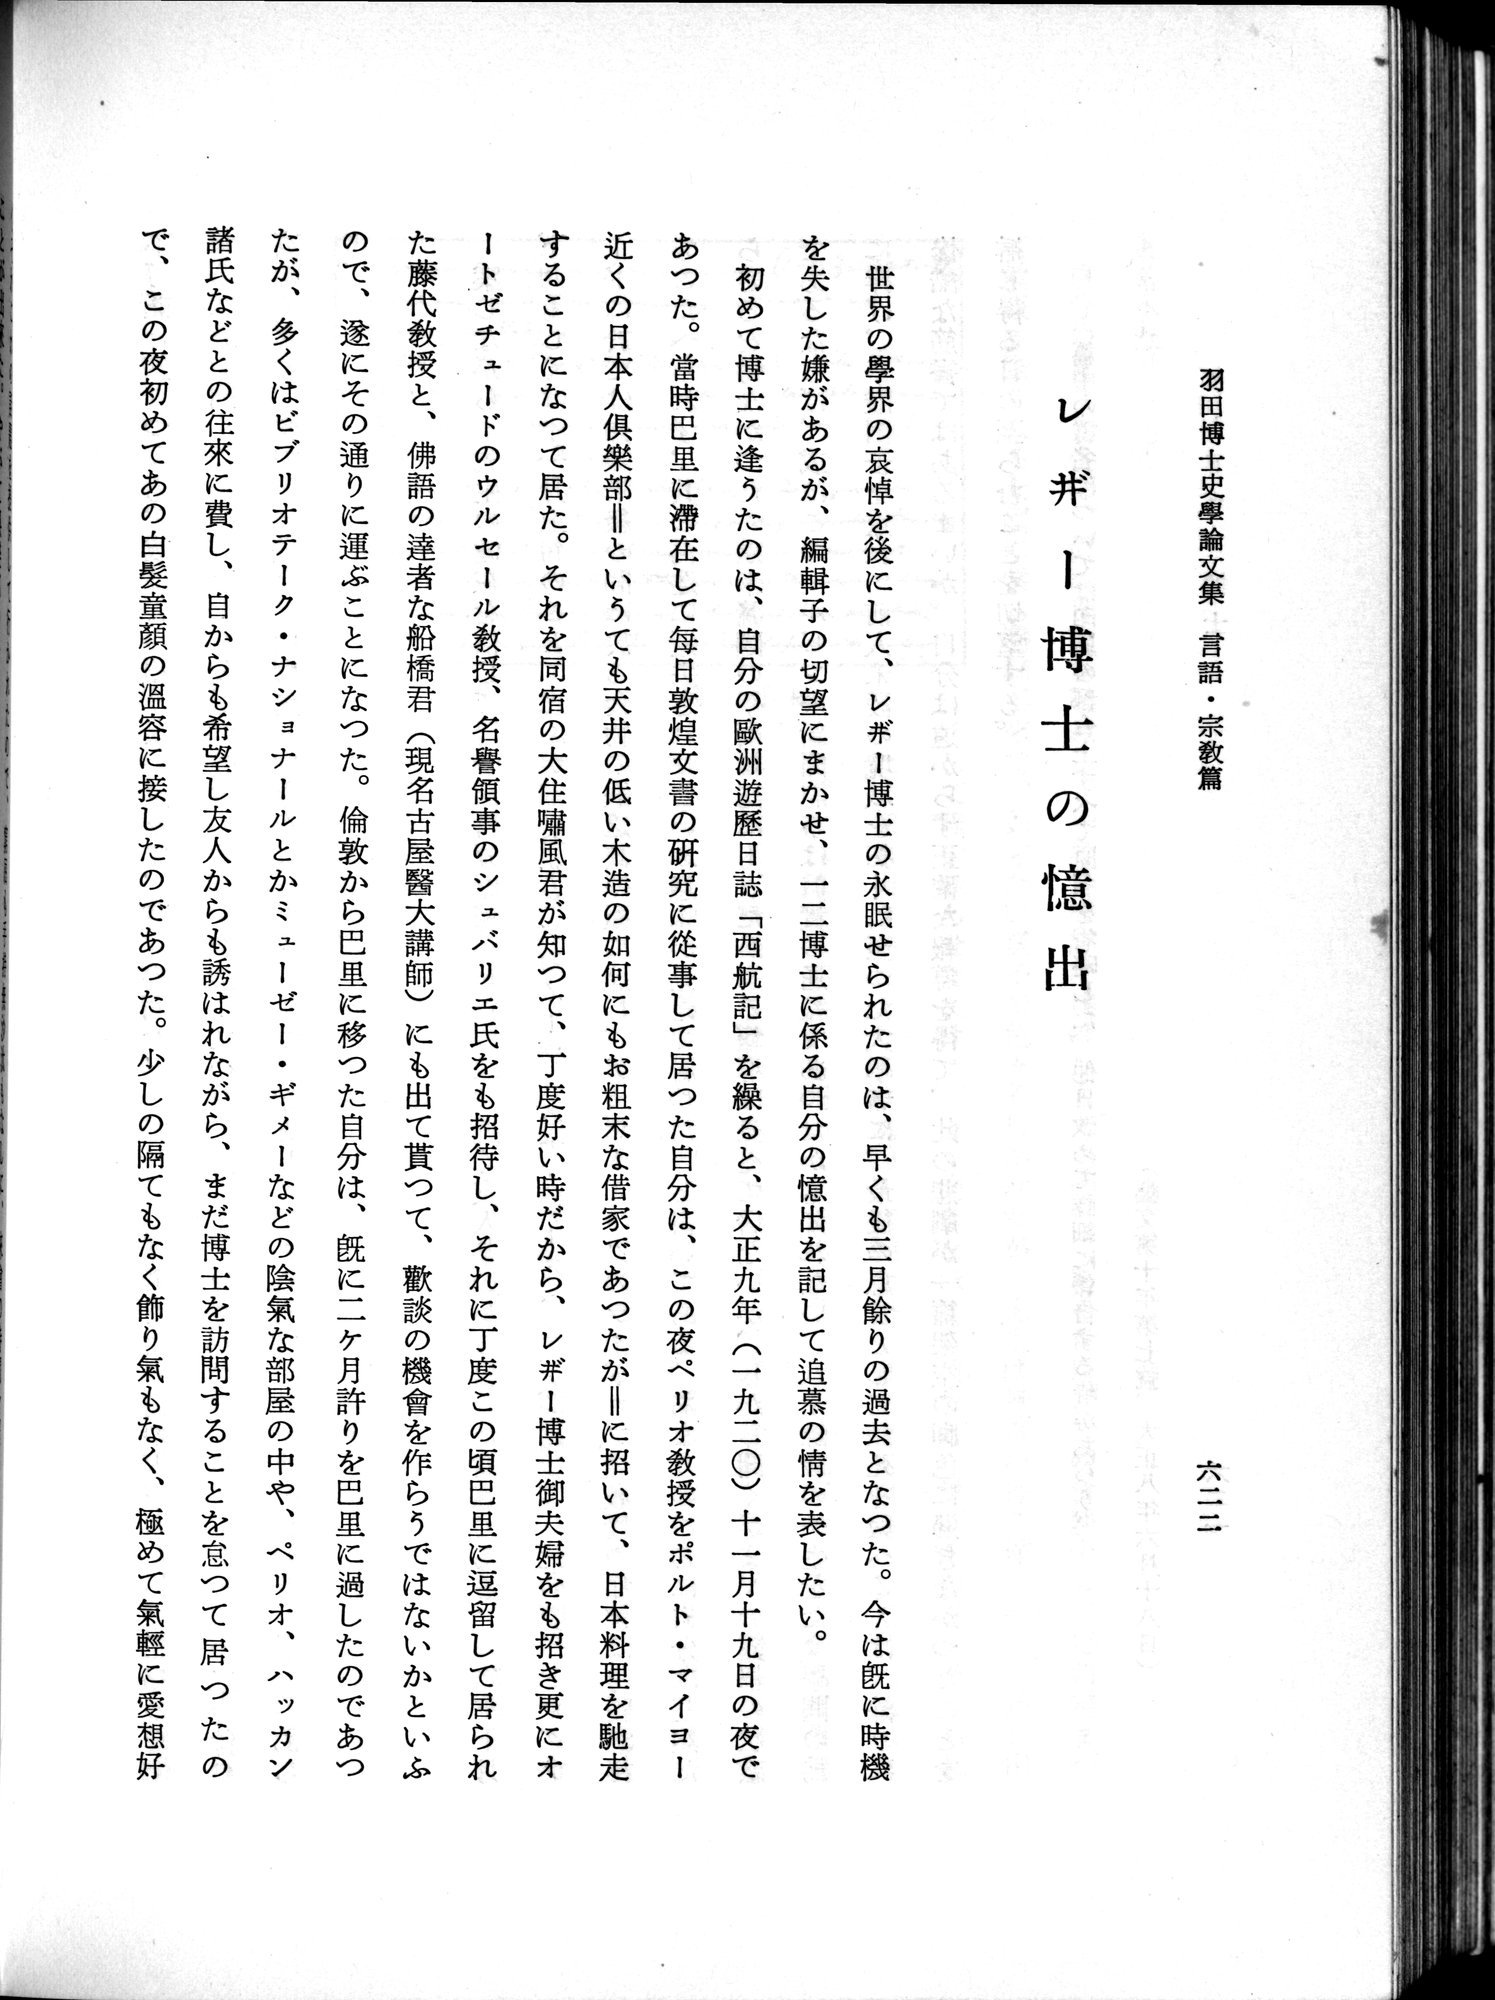 羽田博士史学論文集 : vol.2 / 686 ページ（白黒高解像度画像）